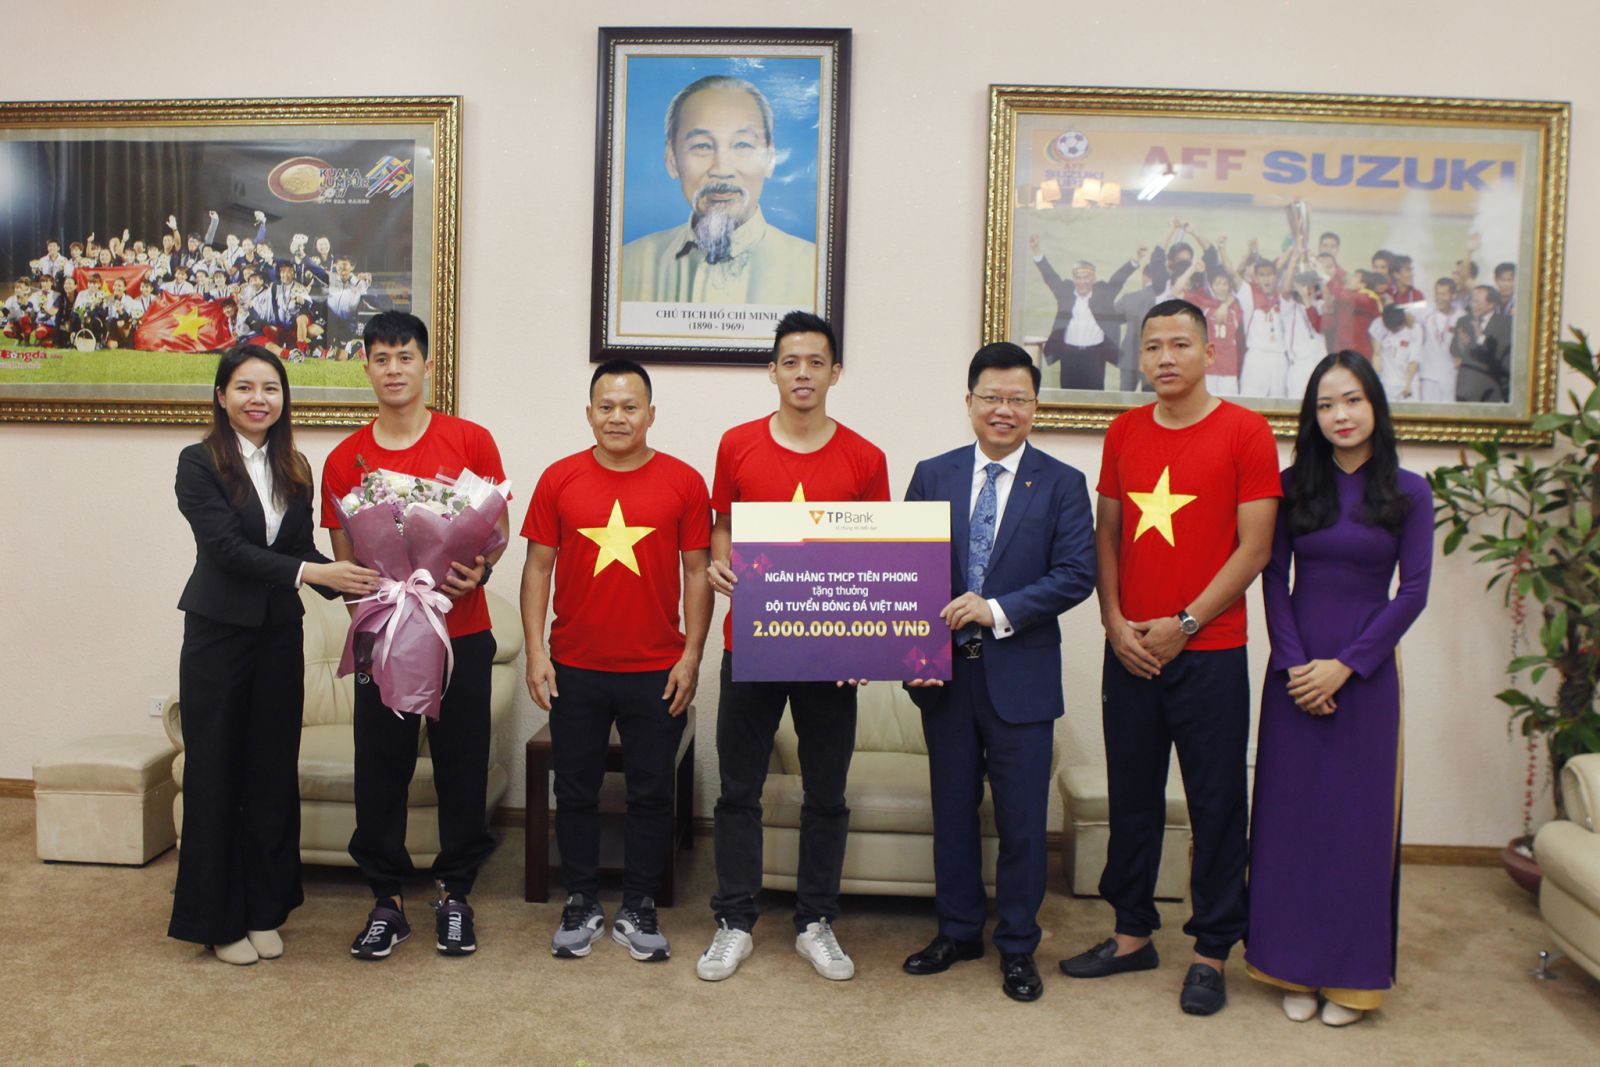 Đại diện TPBank, Tổng giám đốc Nguyễn Hưng trao thưởng 2 tỷ đồng cho đội tuyển tại trụ sở Liên đoàn bóng đá Việt Nam.